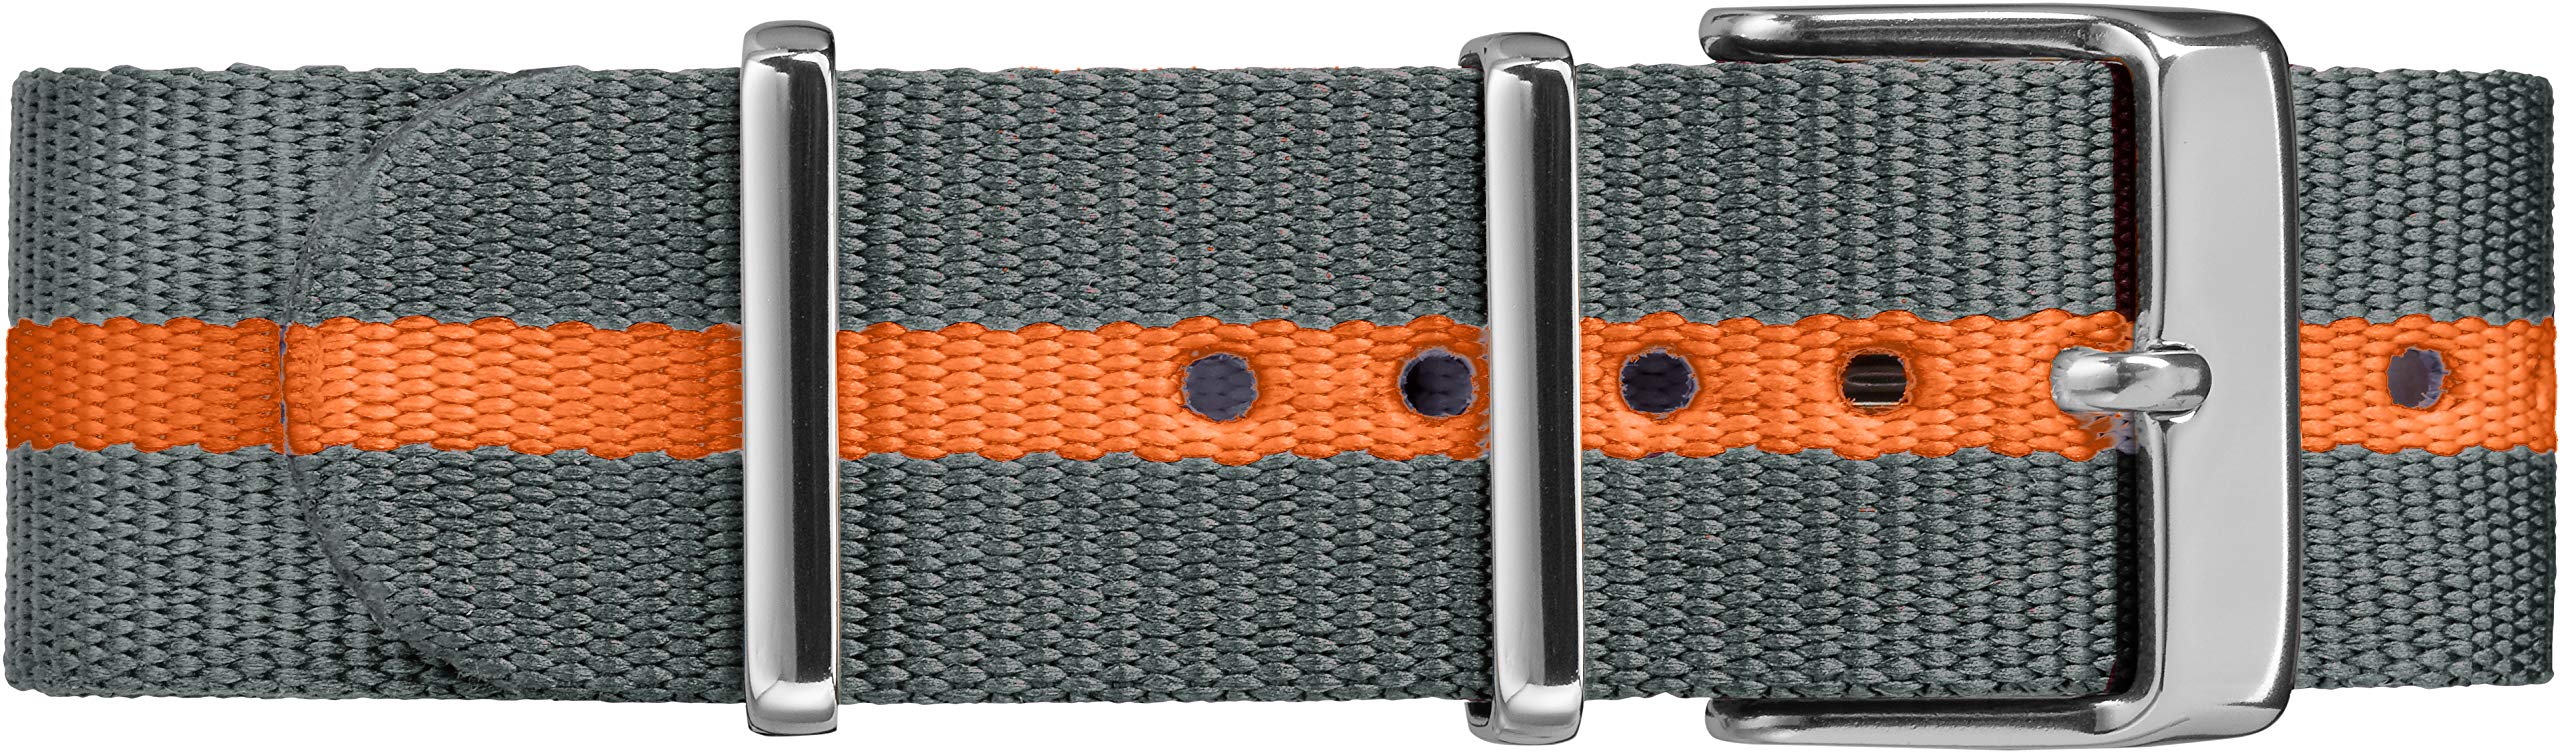 Timex Weekender Slip-Thru Watch - Gray/Orange Stripe